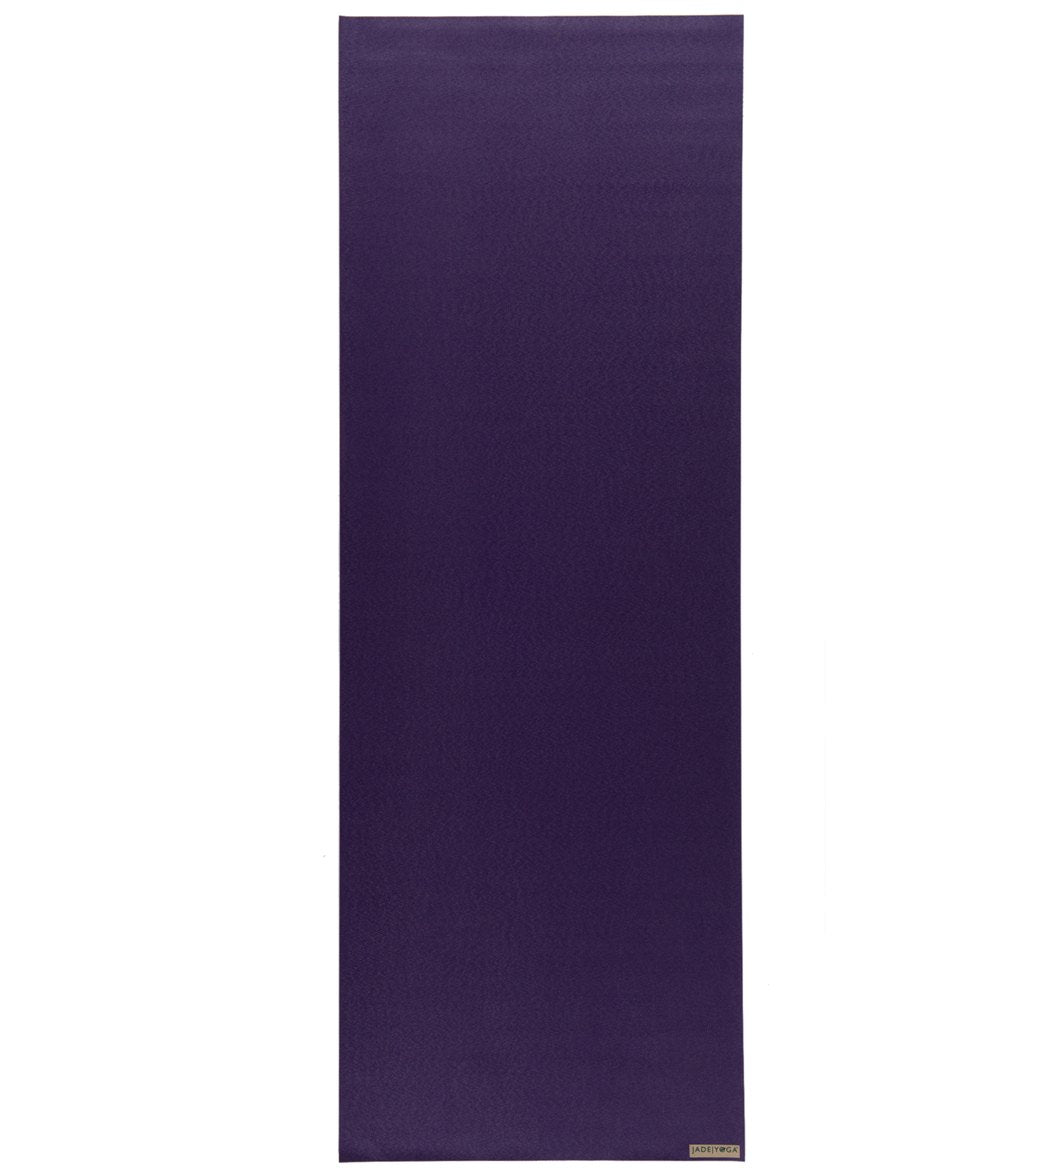 https://www.everydayyoga.com/cdn/shop/products/1740127731747-purple-2a.jpg?v=1615332762